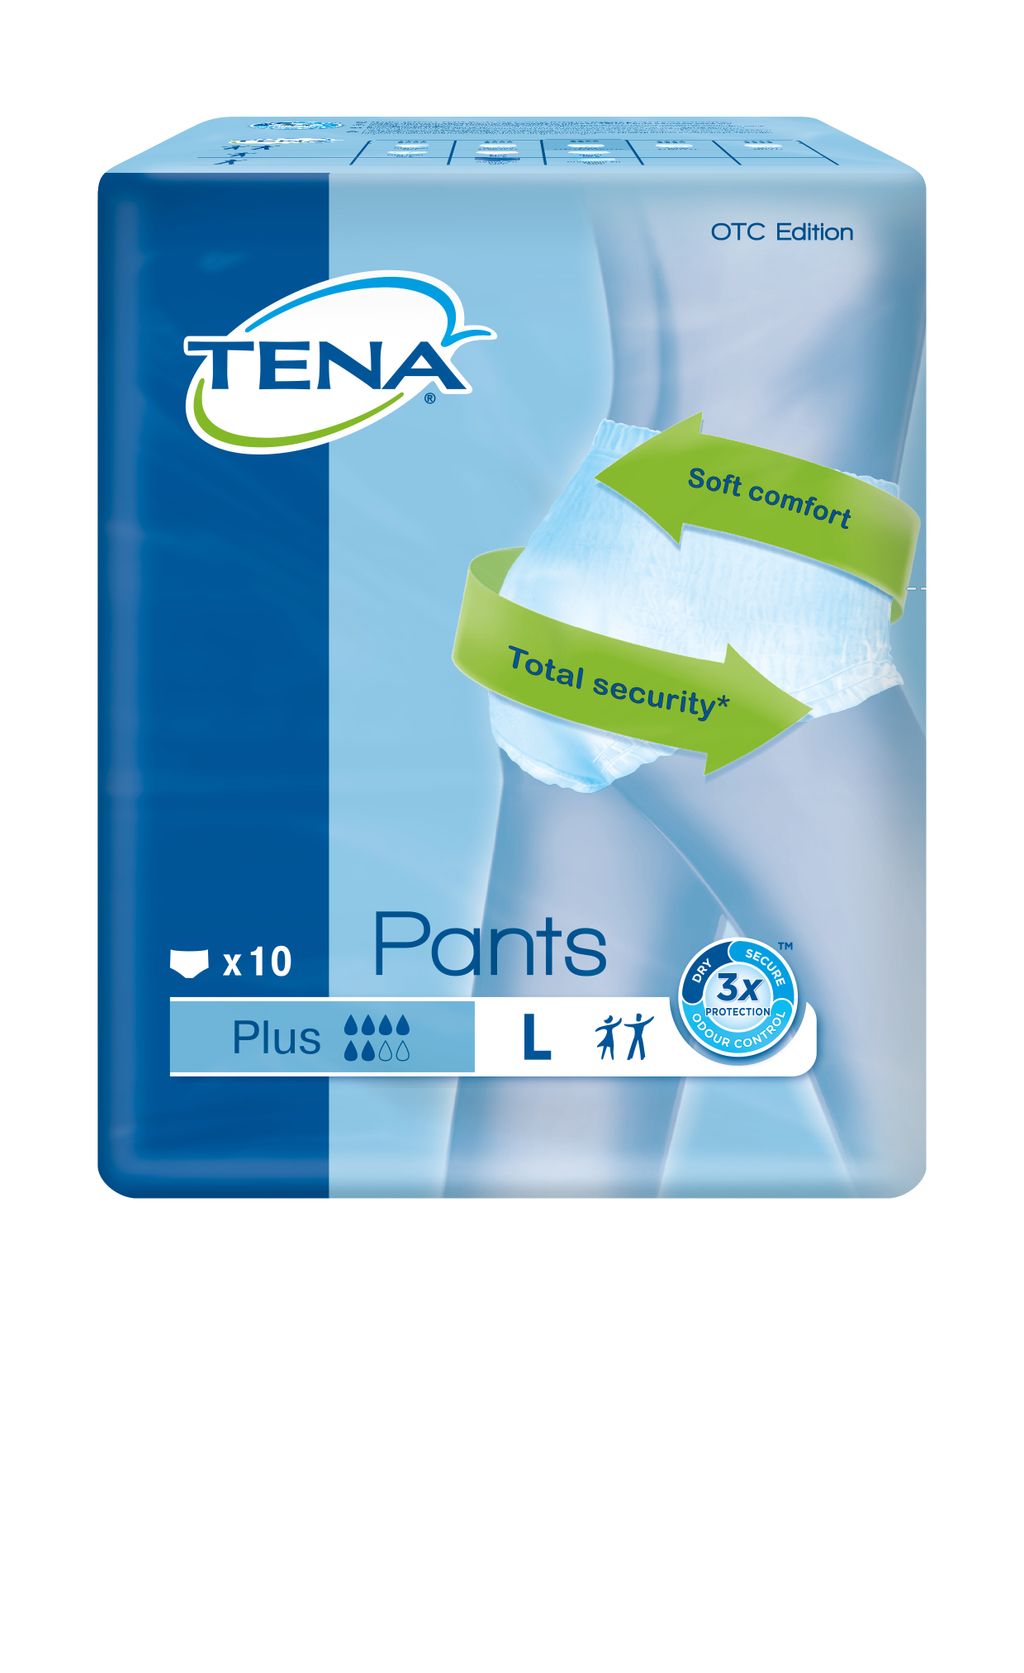 Подгузники-трусы для взрослых Tena Pants Plus, Large L (3), 100-135 см, 10 шт.